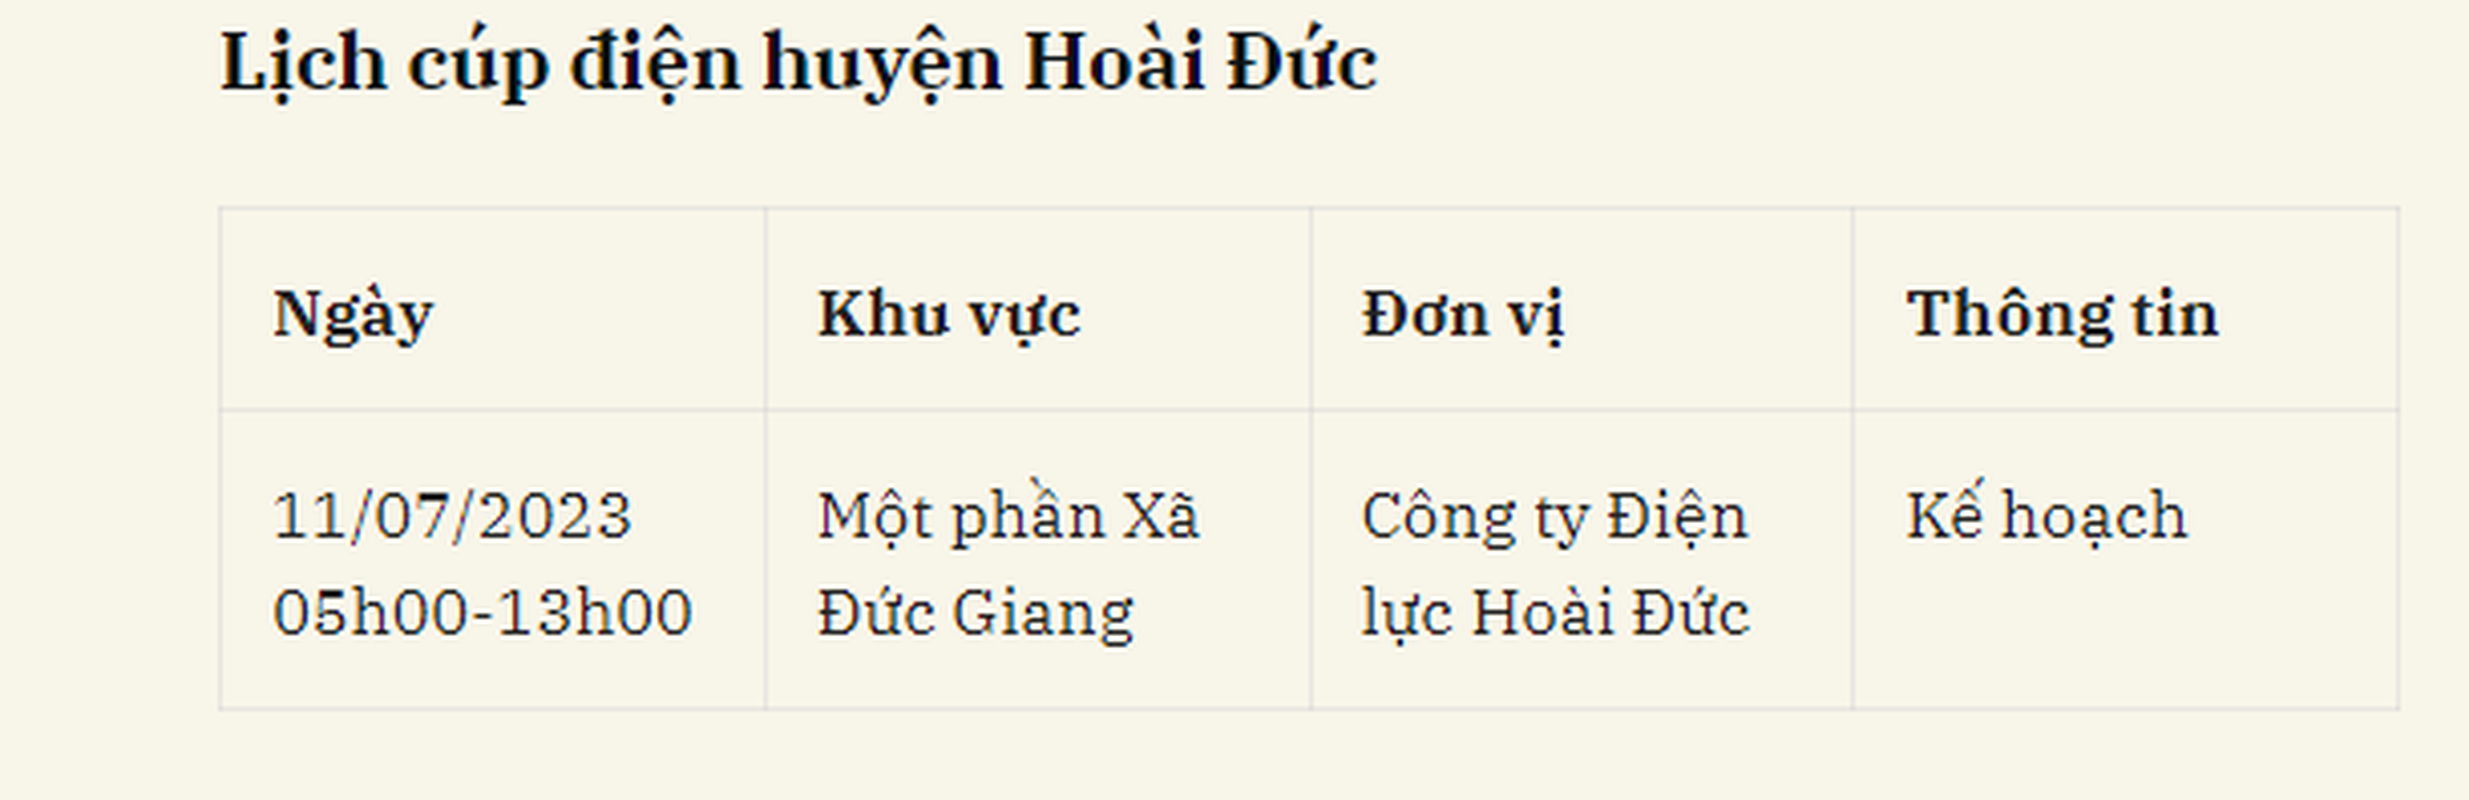 Lich cup dien Ha Noi ngay 11/7/2023: Mot so khu vuc noi thanh mat dien-Hinh-7